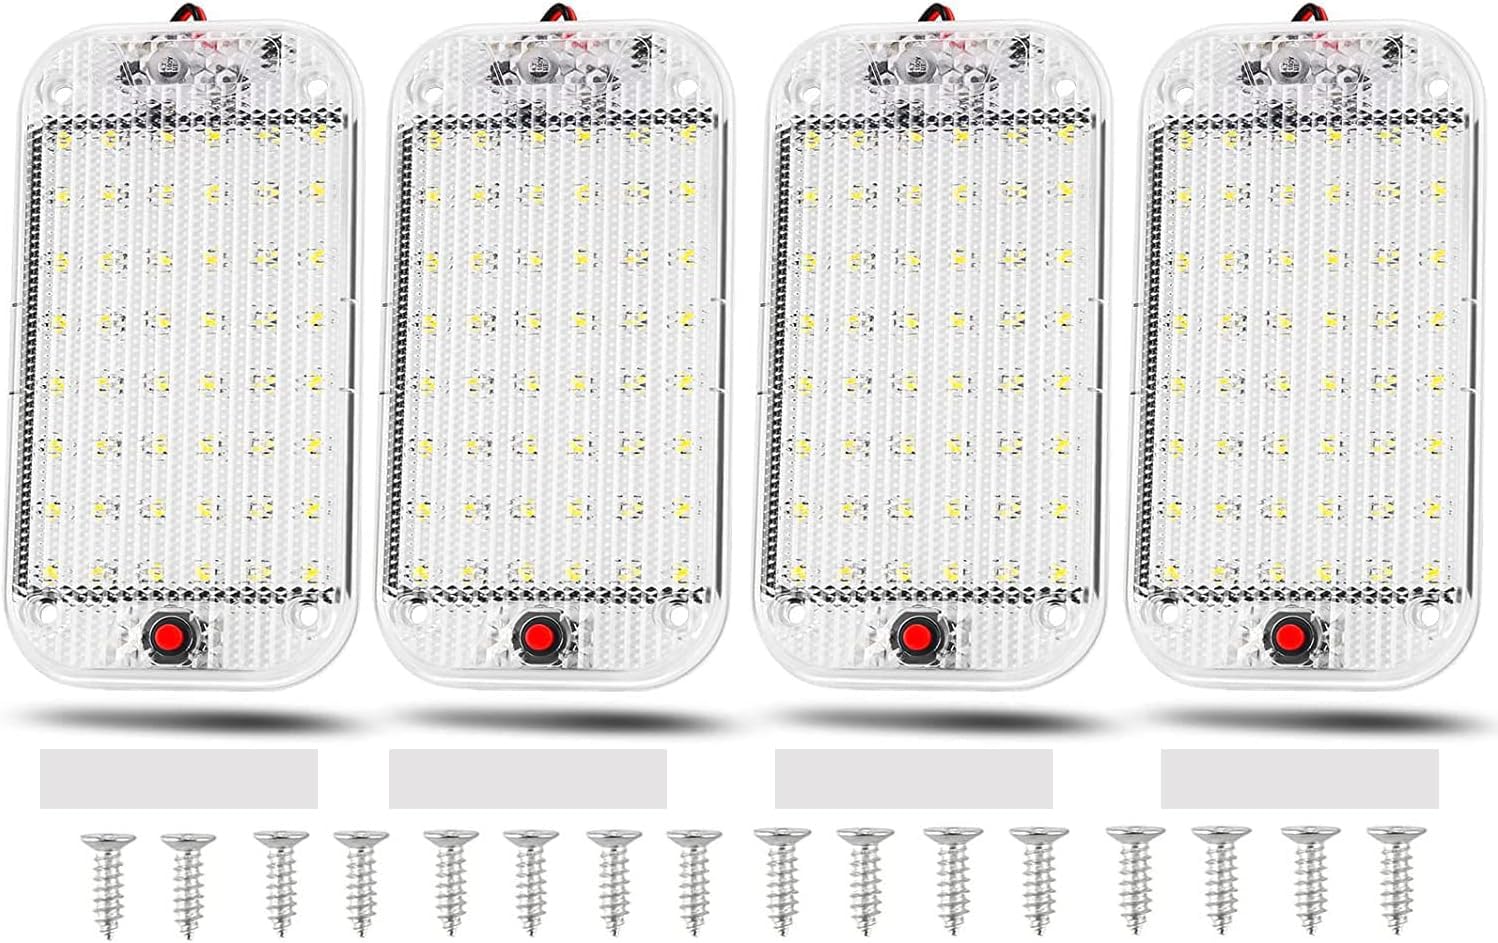 Thlevel Auto Innen Beleuchtung LED KFZ Innenraumbeleuchtung 48 LEDs 12V - 85V Weiß Lampe mit EIN/AUS Schalter für Auto Wohnmobile LKW Van Universal Beleuchtung (4 Stück) von Thlevel